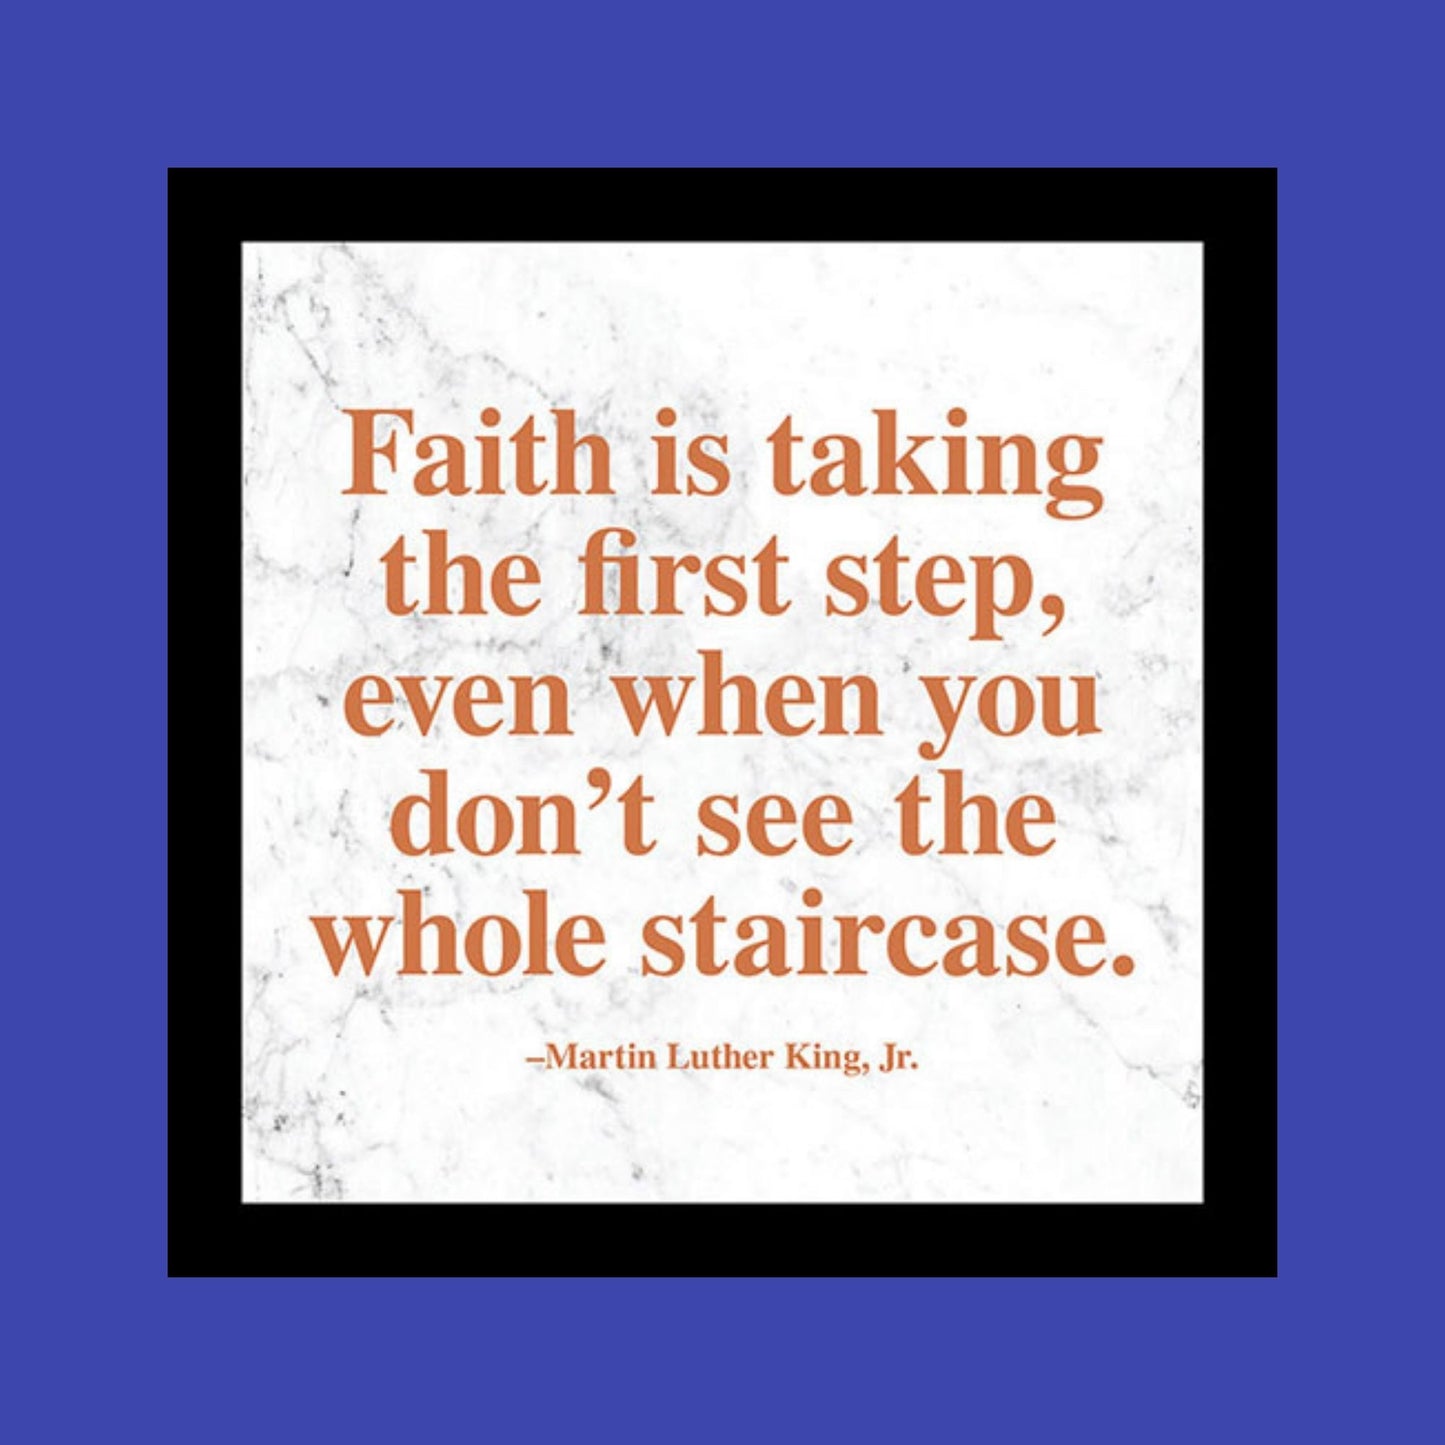 MLK "Faith" Quote Plaque